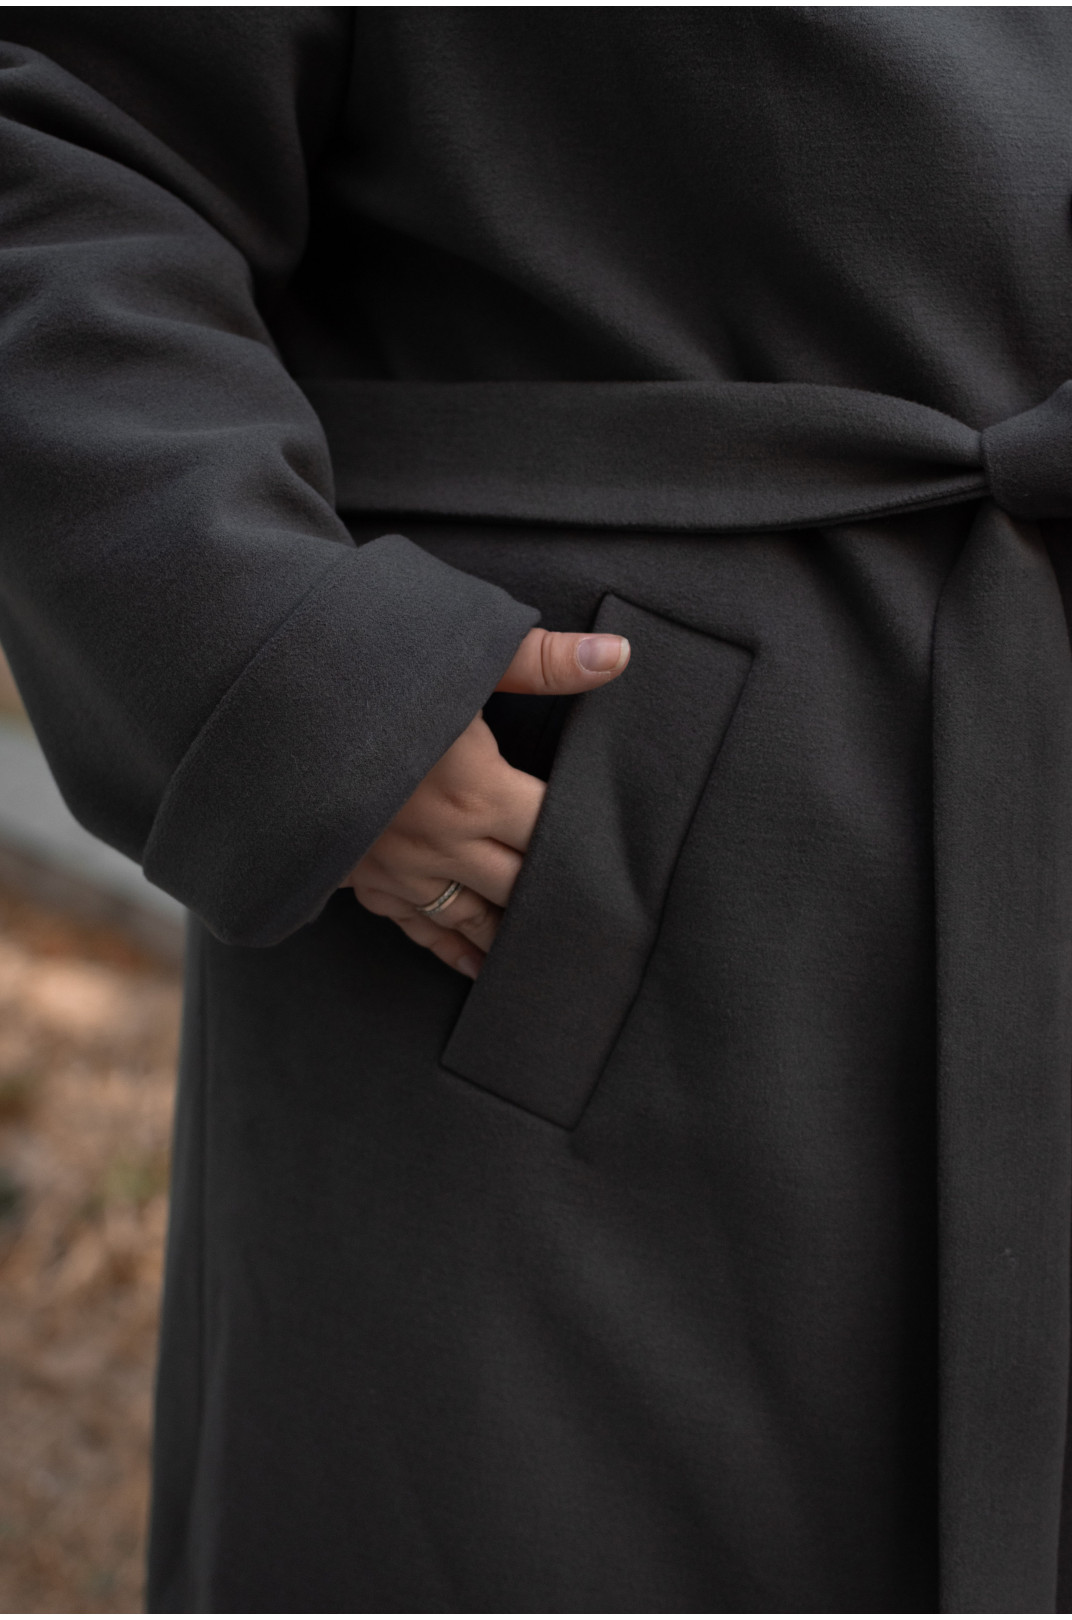 Класичне кашемірове пальто з поясом супер батал